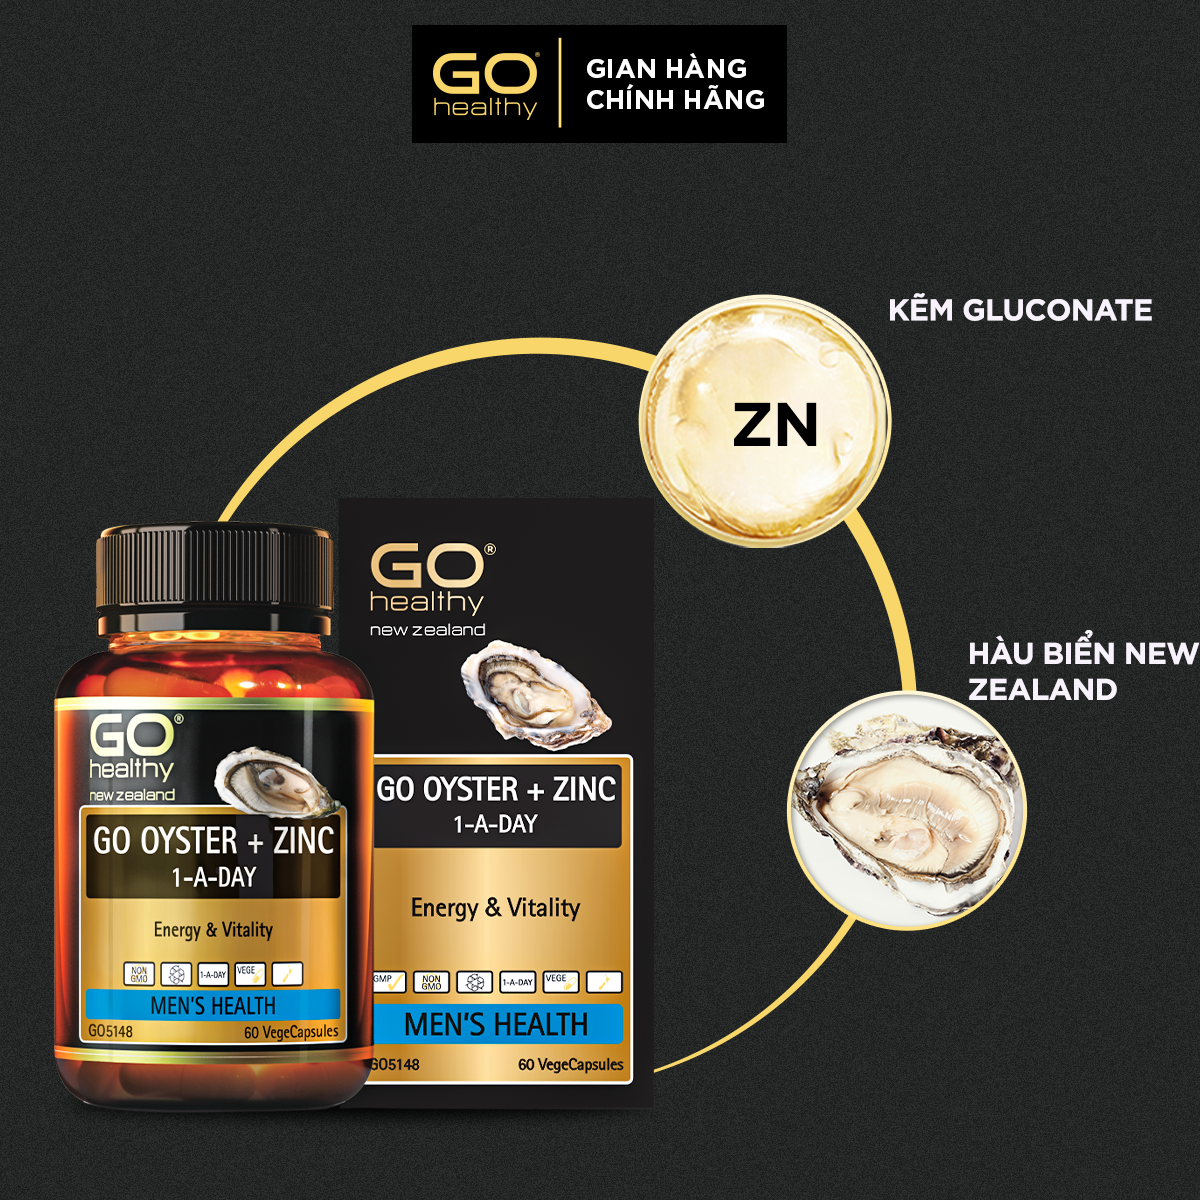 GO OYSTER + ZINC 1-A-DAY 60 VIÊN - Tinh chất hàu nhập khẩu chính hãng GO Healthy New Zealand